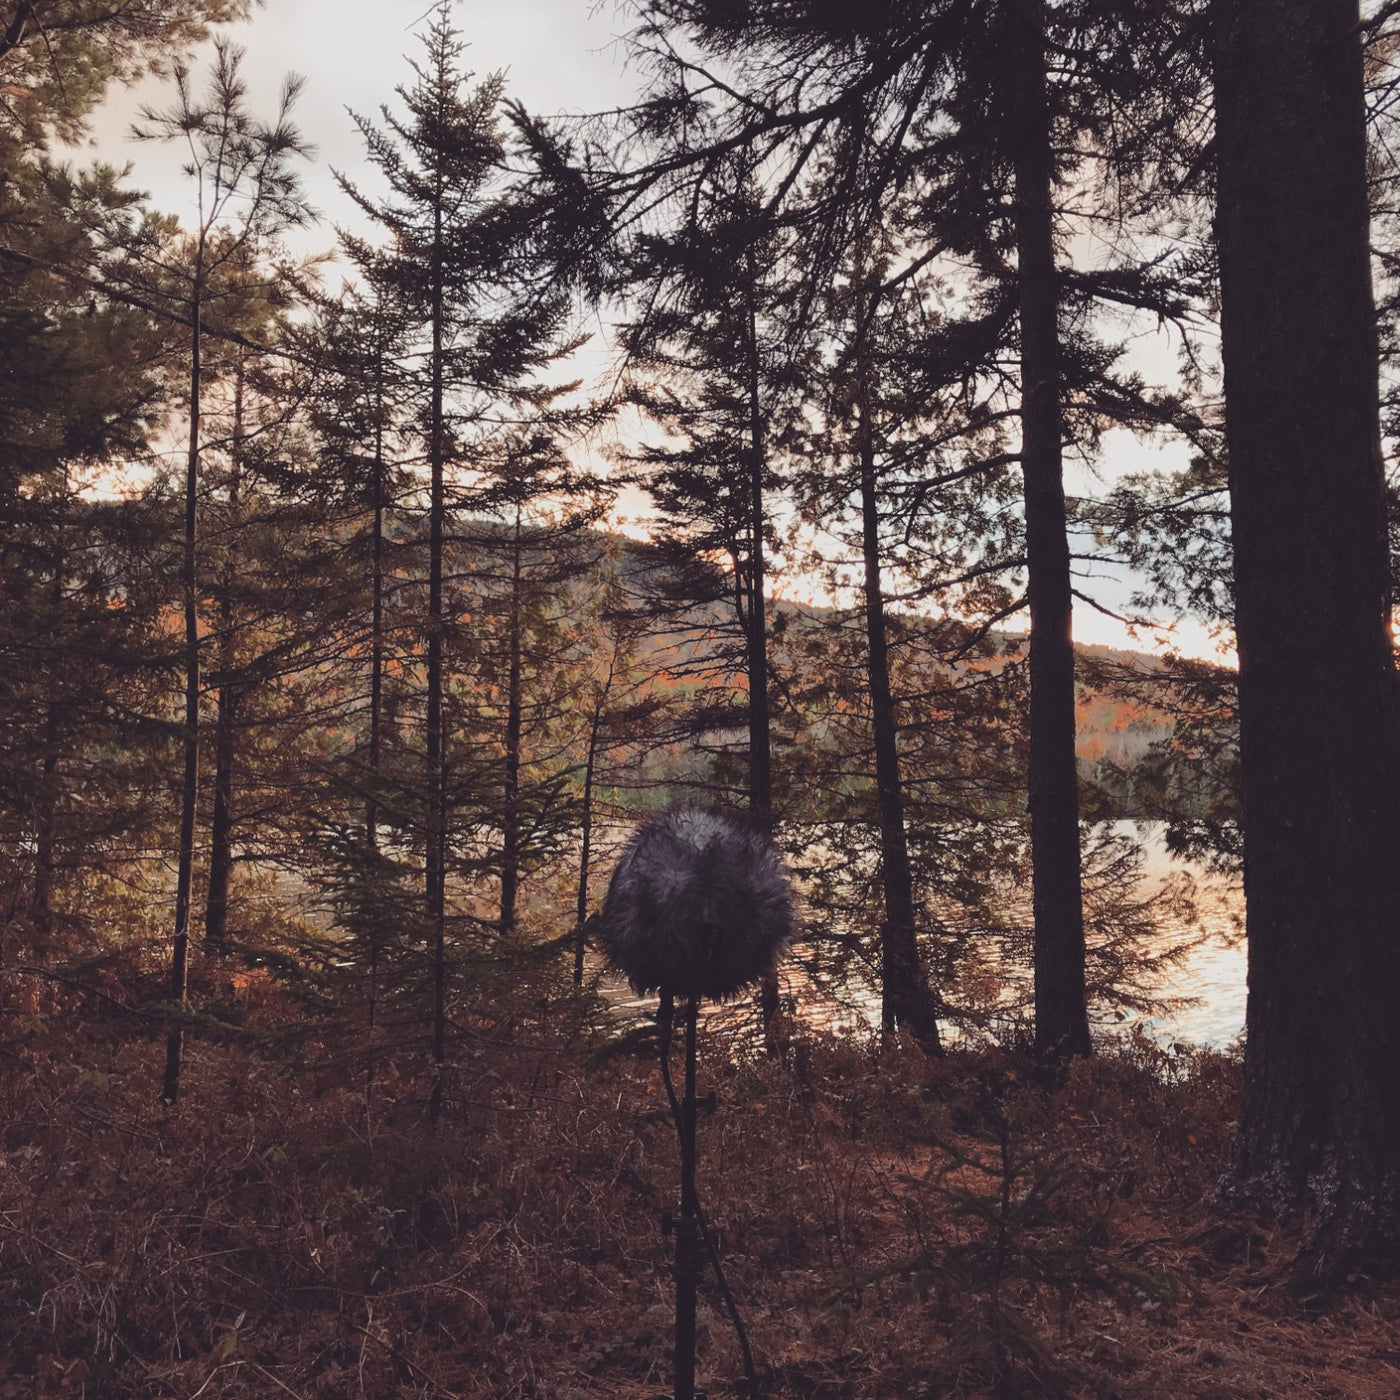 AMB37 Maine: Quiet Nature